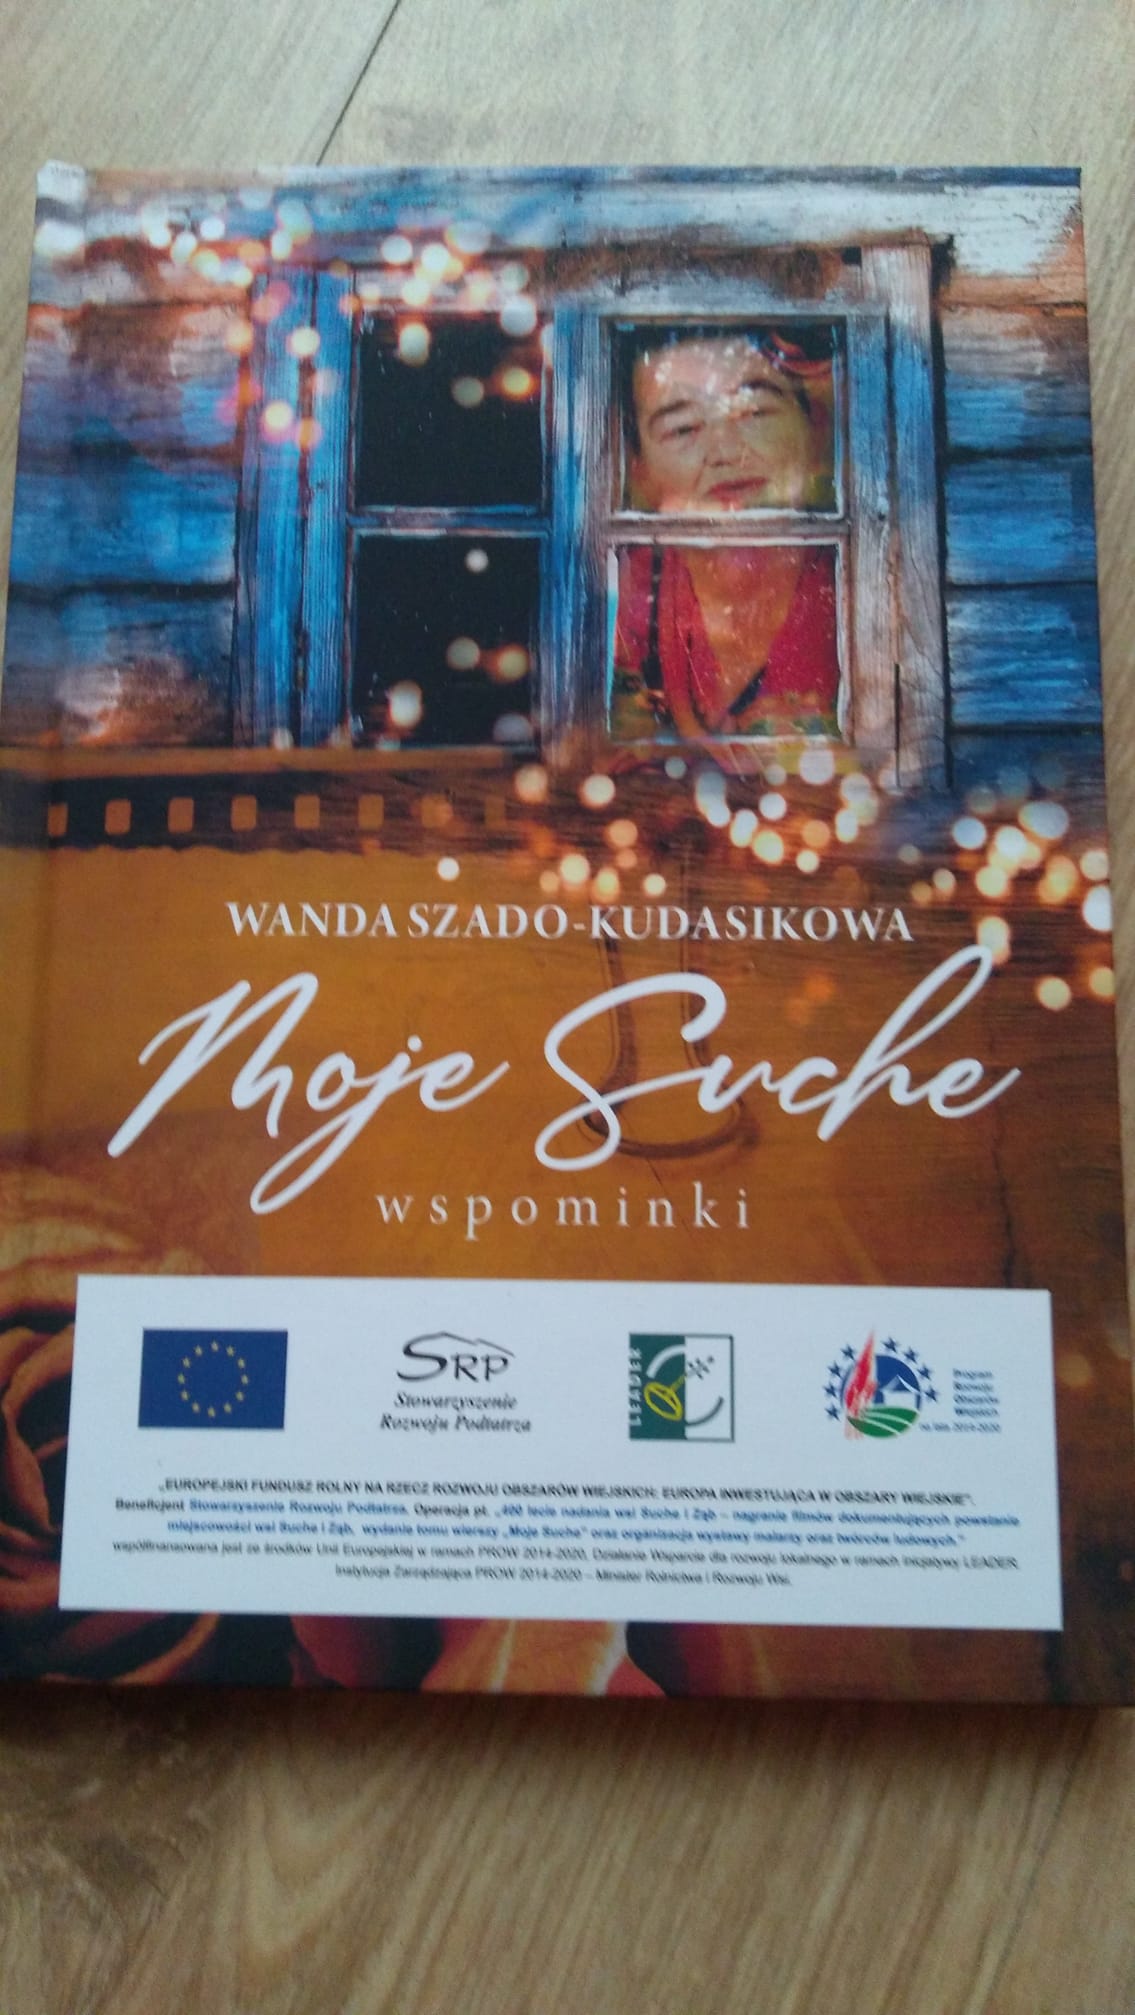 14 lipca 2021 roku – „Moje Suche” – promocja książki pani Wandy Szado-Kudasik w Poroniańskim Centrum Kultury i Dziedzictwa Podhala w Suchem